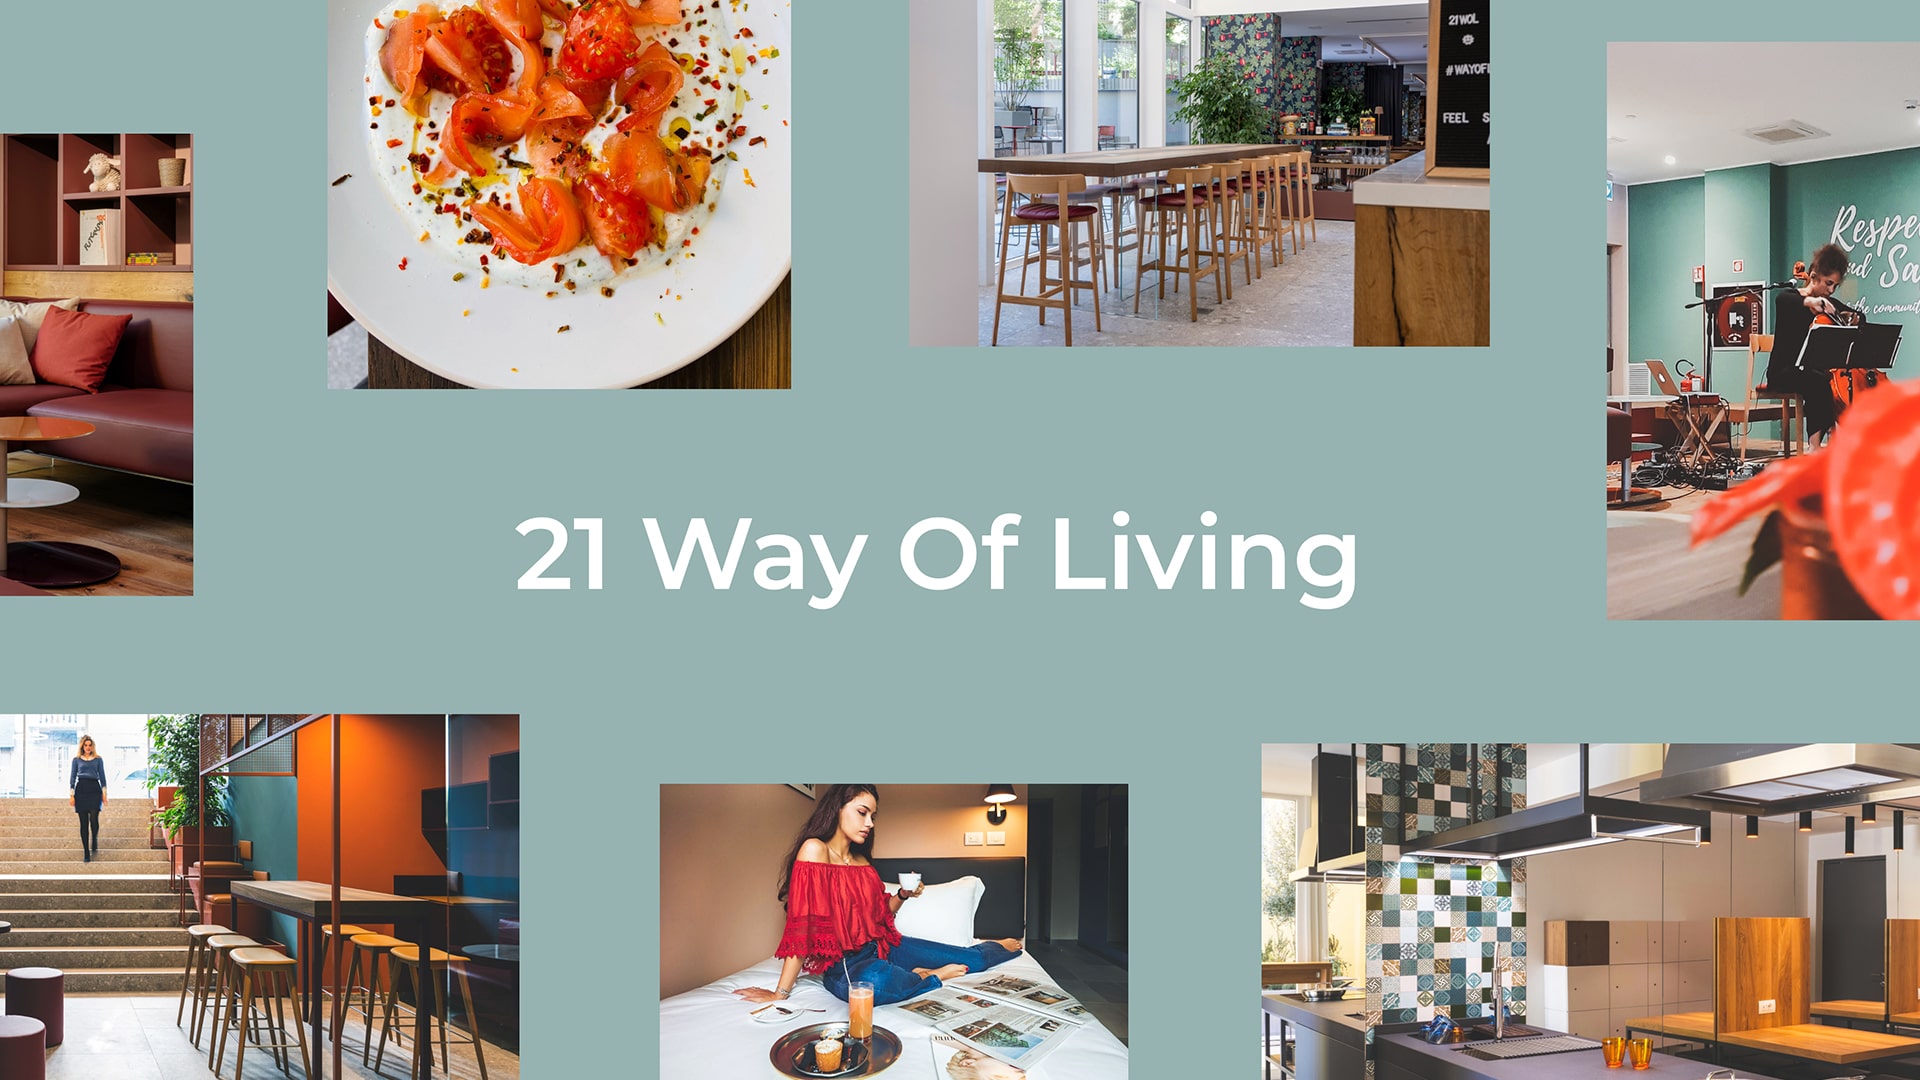 21WOL sceglie KeyWe per comunicare il nuovo concetto di ospitalità